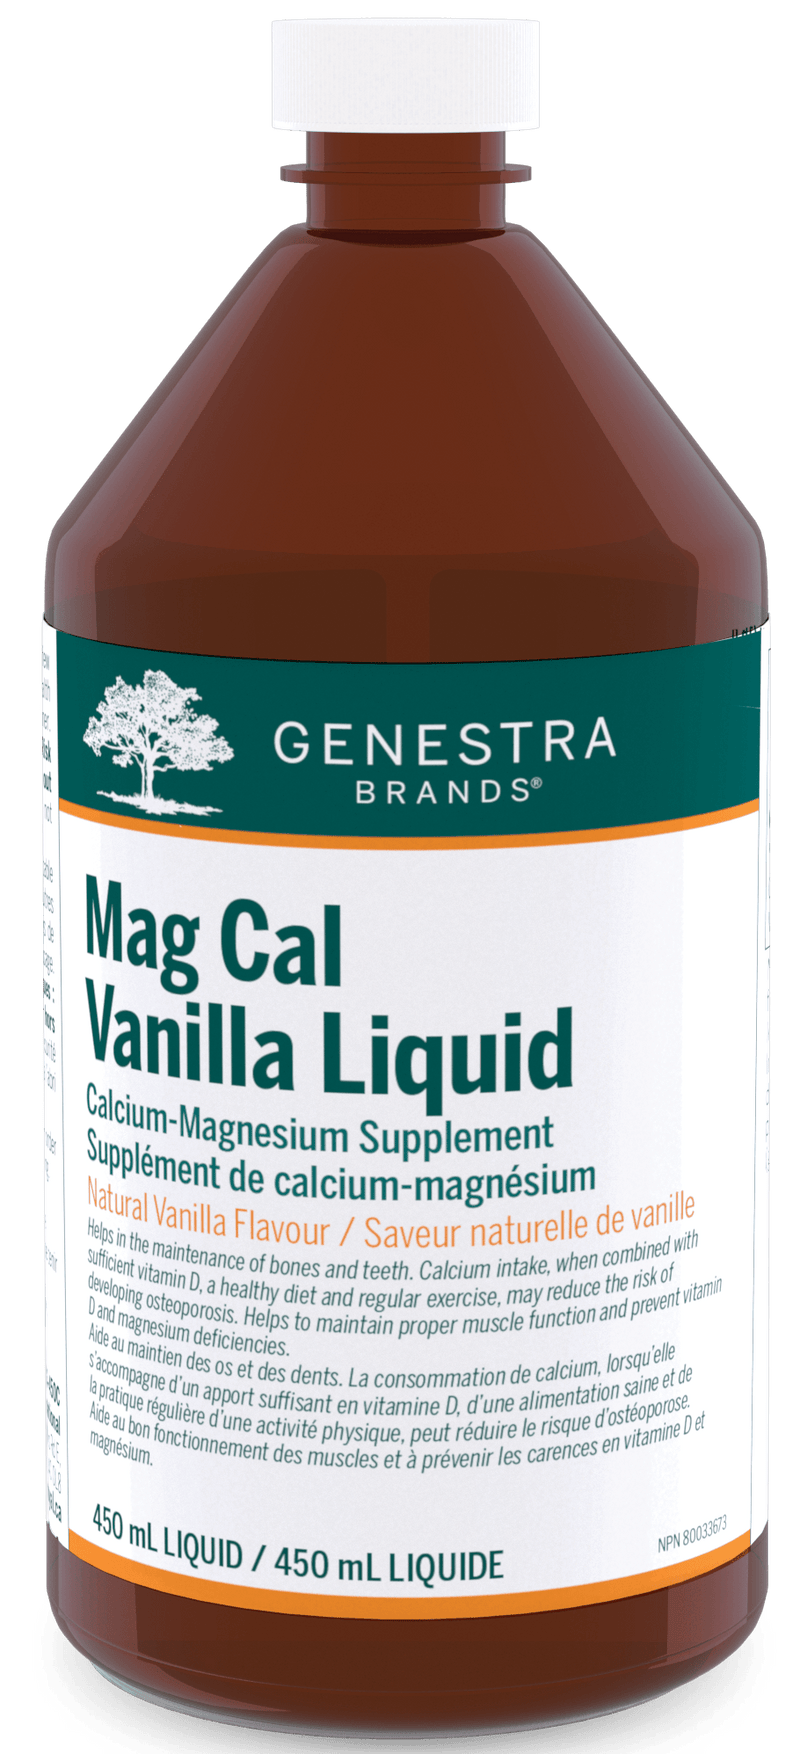 Genestra Mag Cal Vanilla Liquid 450mL - Five Natural